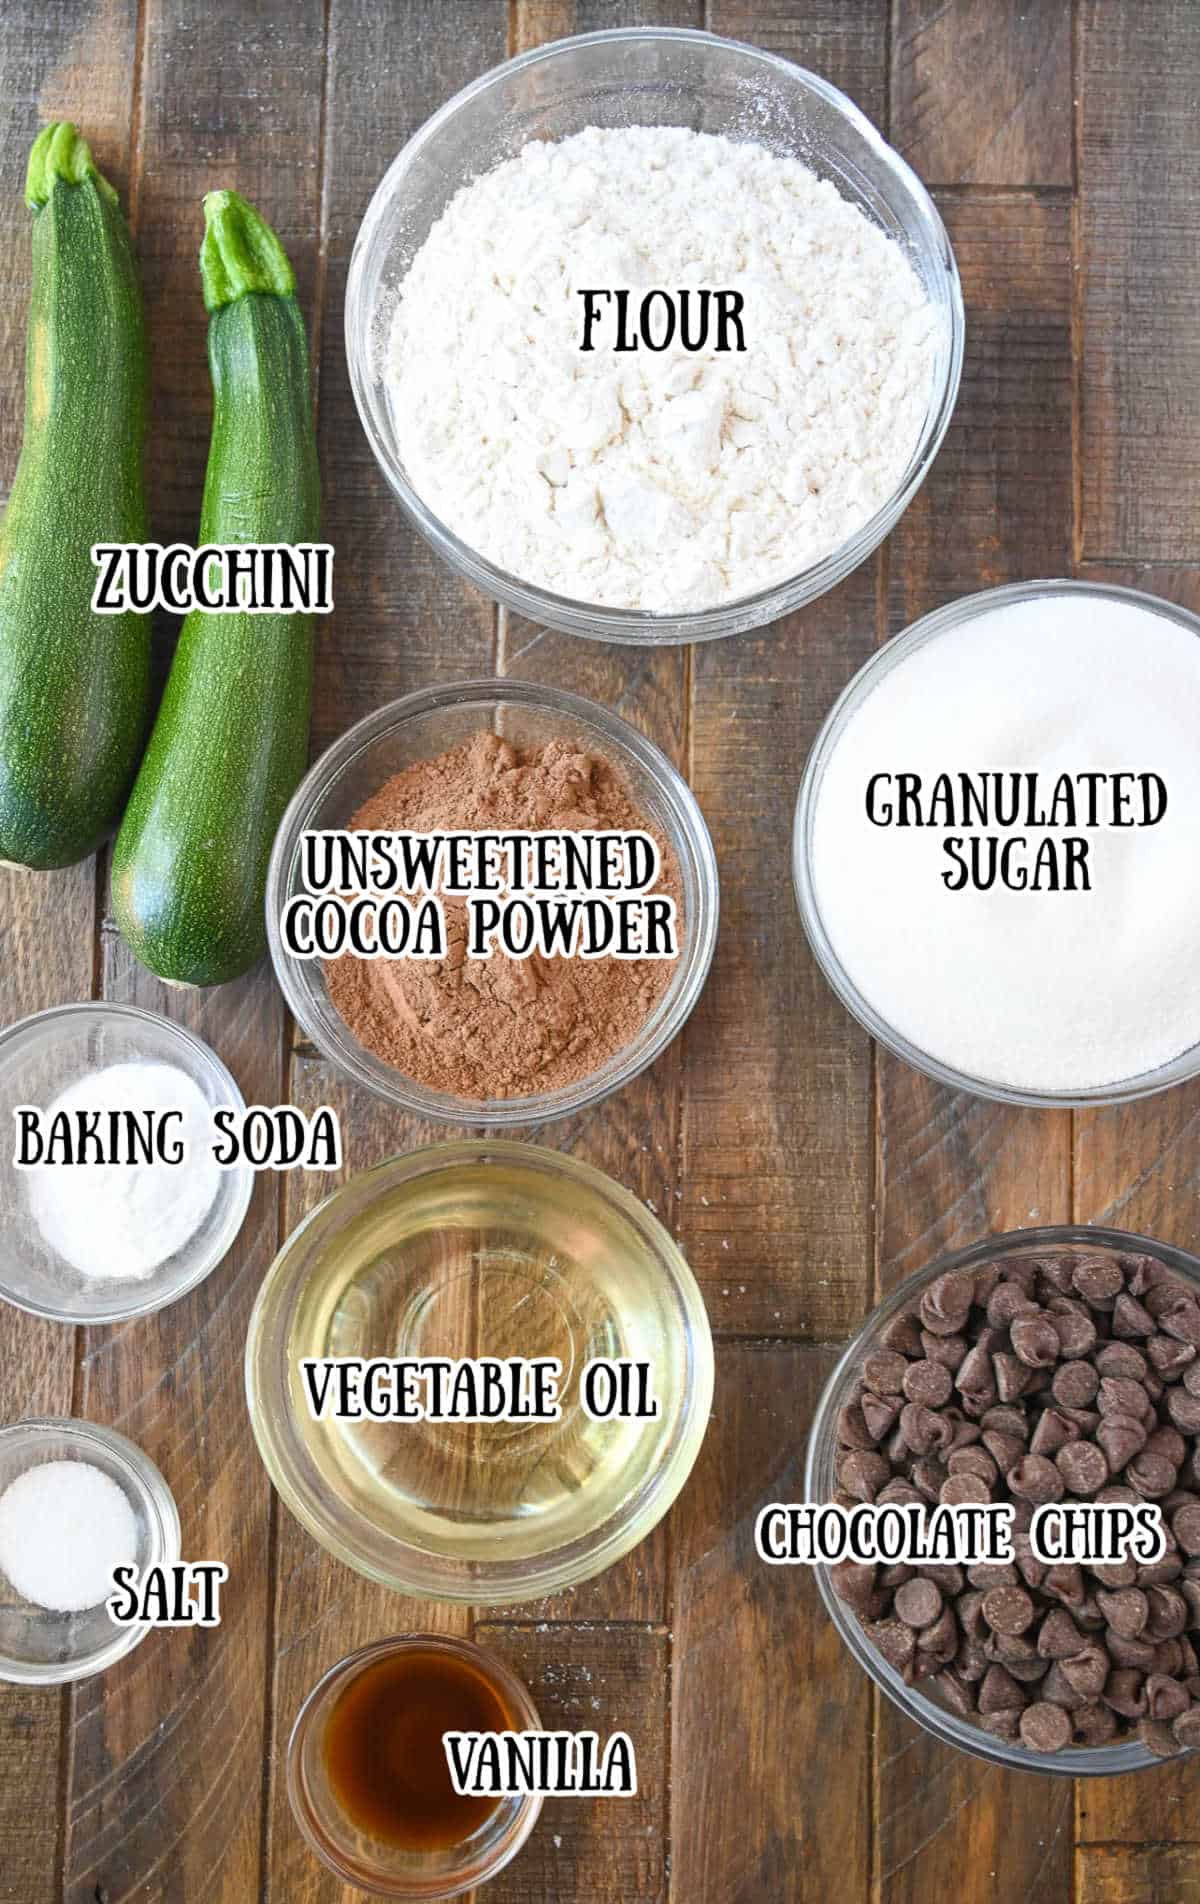 Todos los ingredientes necesarios para esta receta.